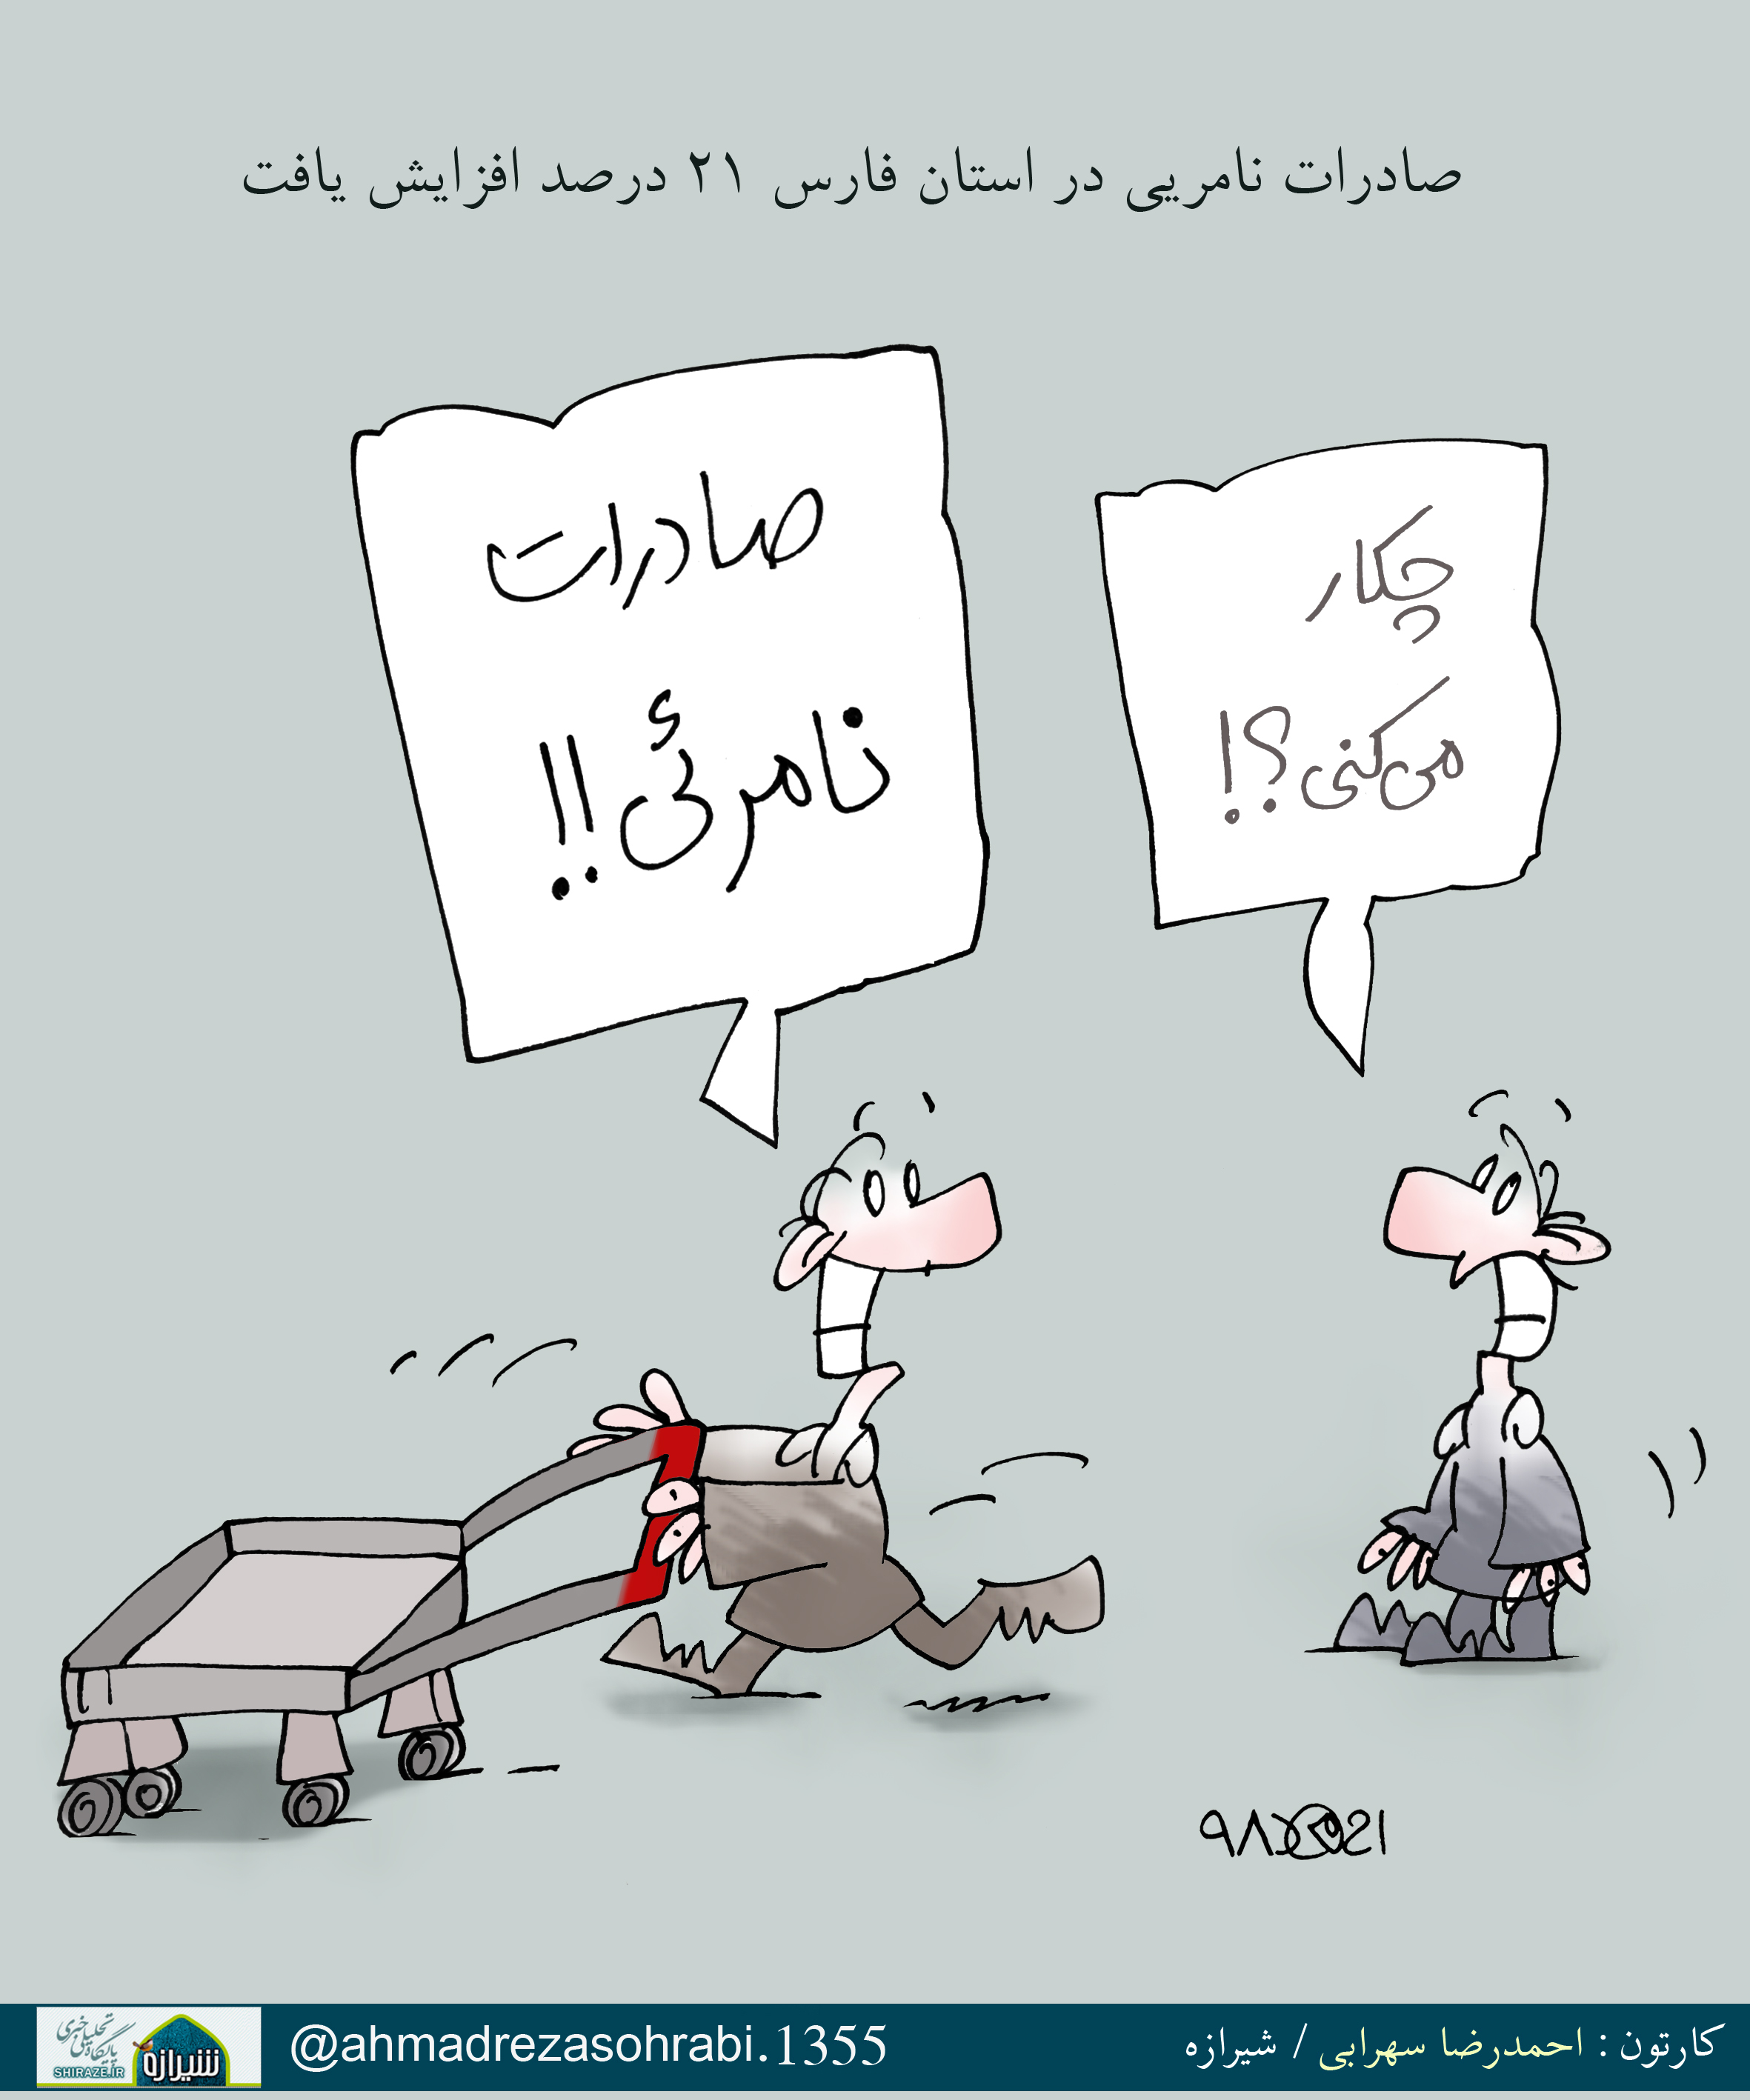 صادرات نامریی در استان فارس 21 درصد افزایش یافت / کارتون : احمدرضا سهرابی